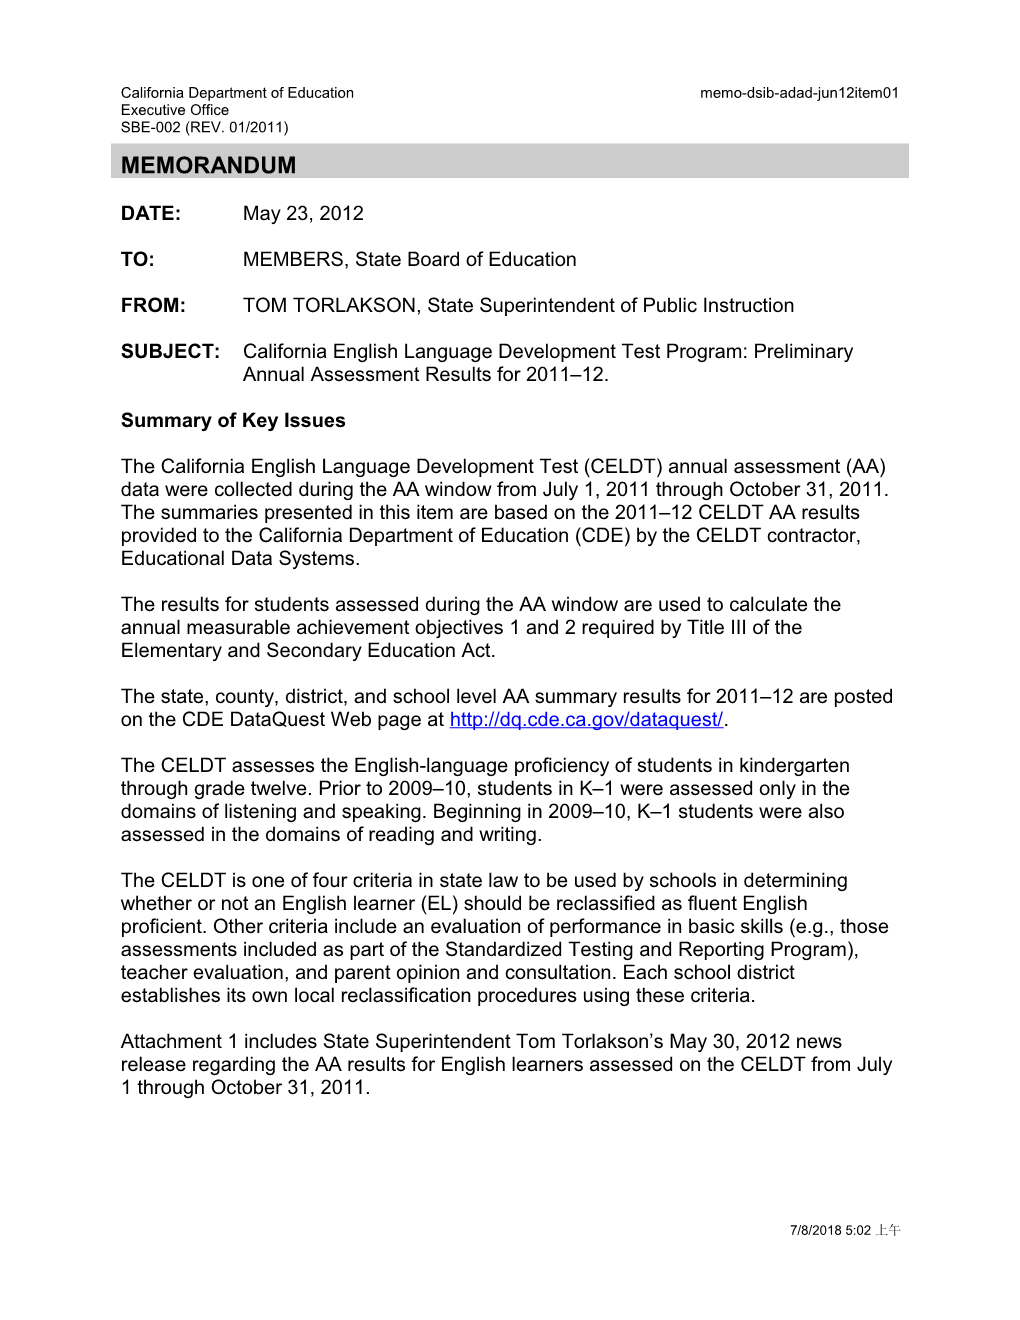 June 2012 Memorandum ADAD Item 1 - Information Memorandum (CA State Board of Education)